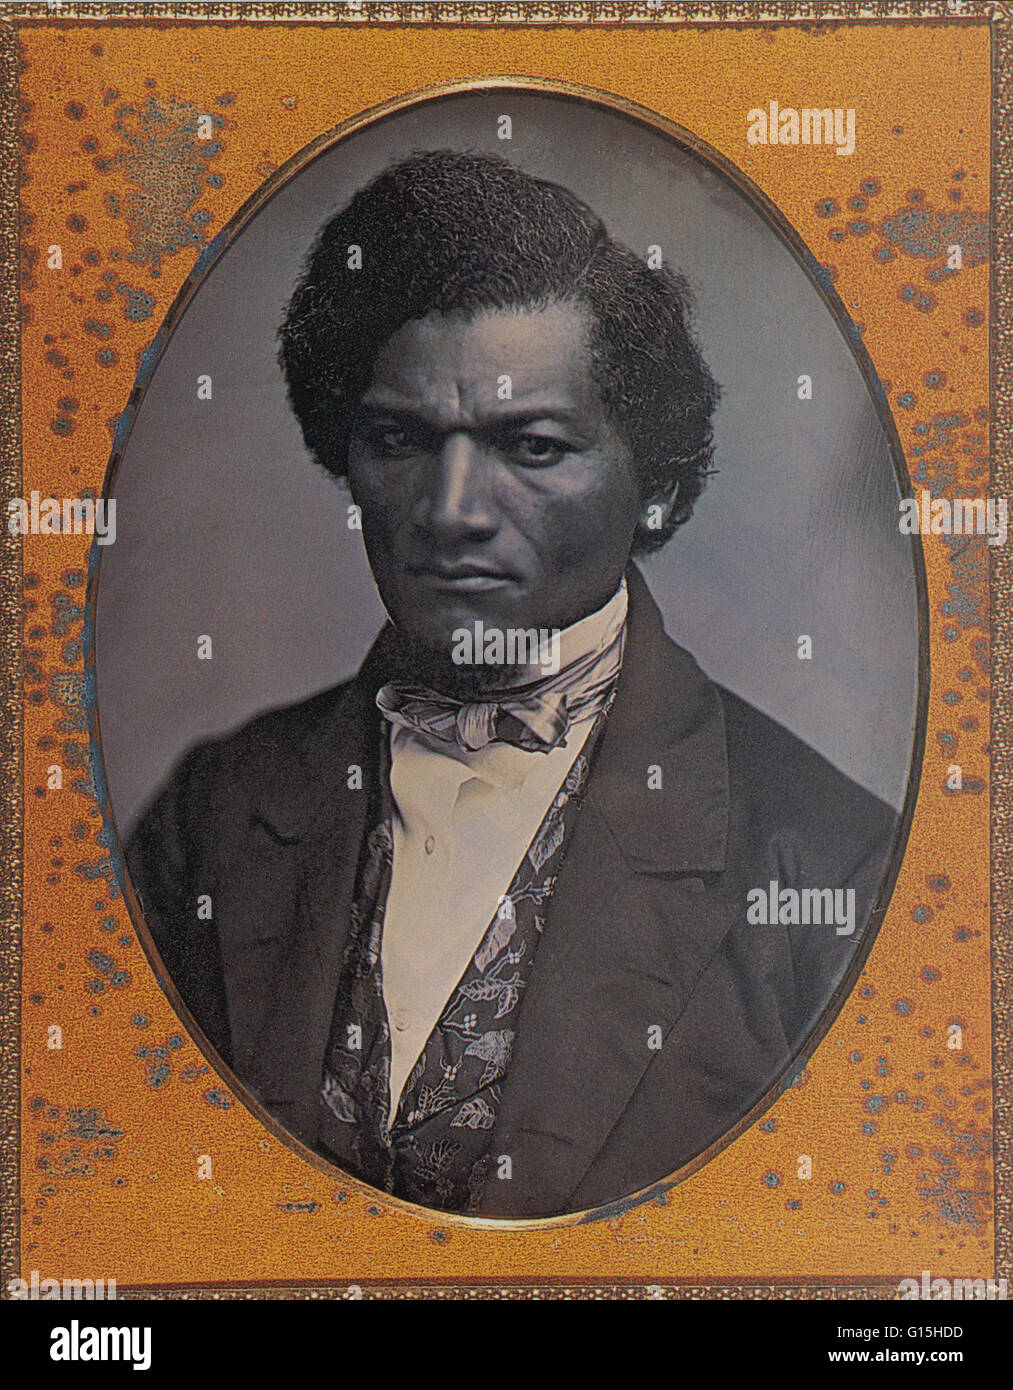 Frederick Douglass (Février 1818 - février 20, 1895) était un réformateur social, orateur, écrivain et homme d'État. Après s'être échappé de l'esclavage, il est devenu un chef de file du mouvement abolitionniste, gagnant note pour son éclatante oratoire et incisif antislav Banque D'Images